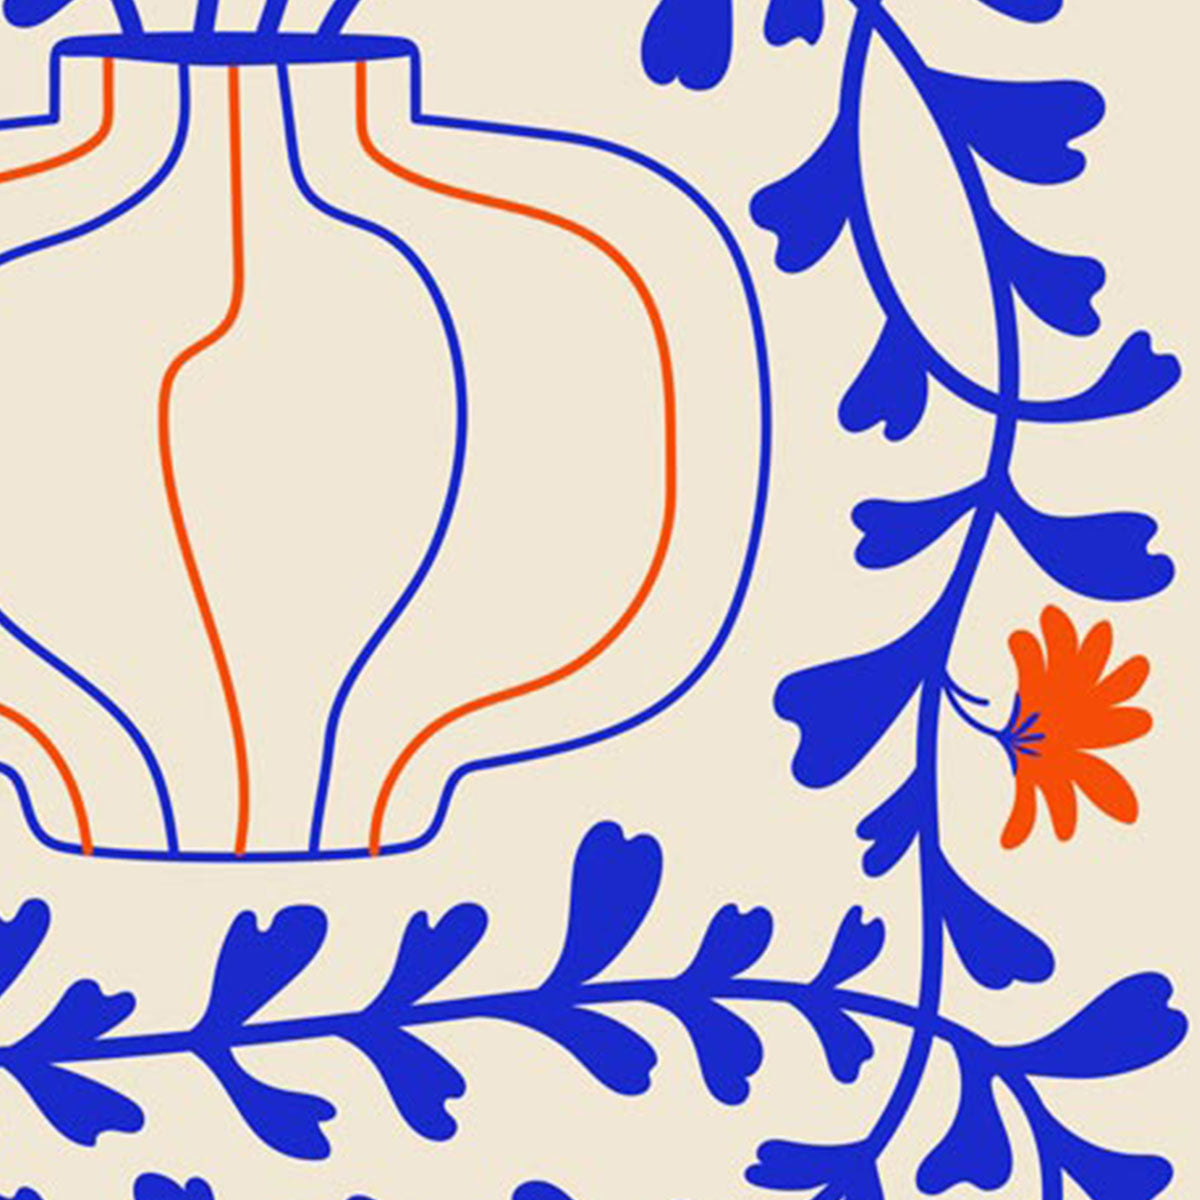 Blue Vines Orange Flowers Papiers Découpés Art Exhibition Poster